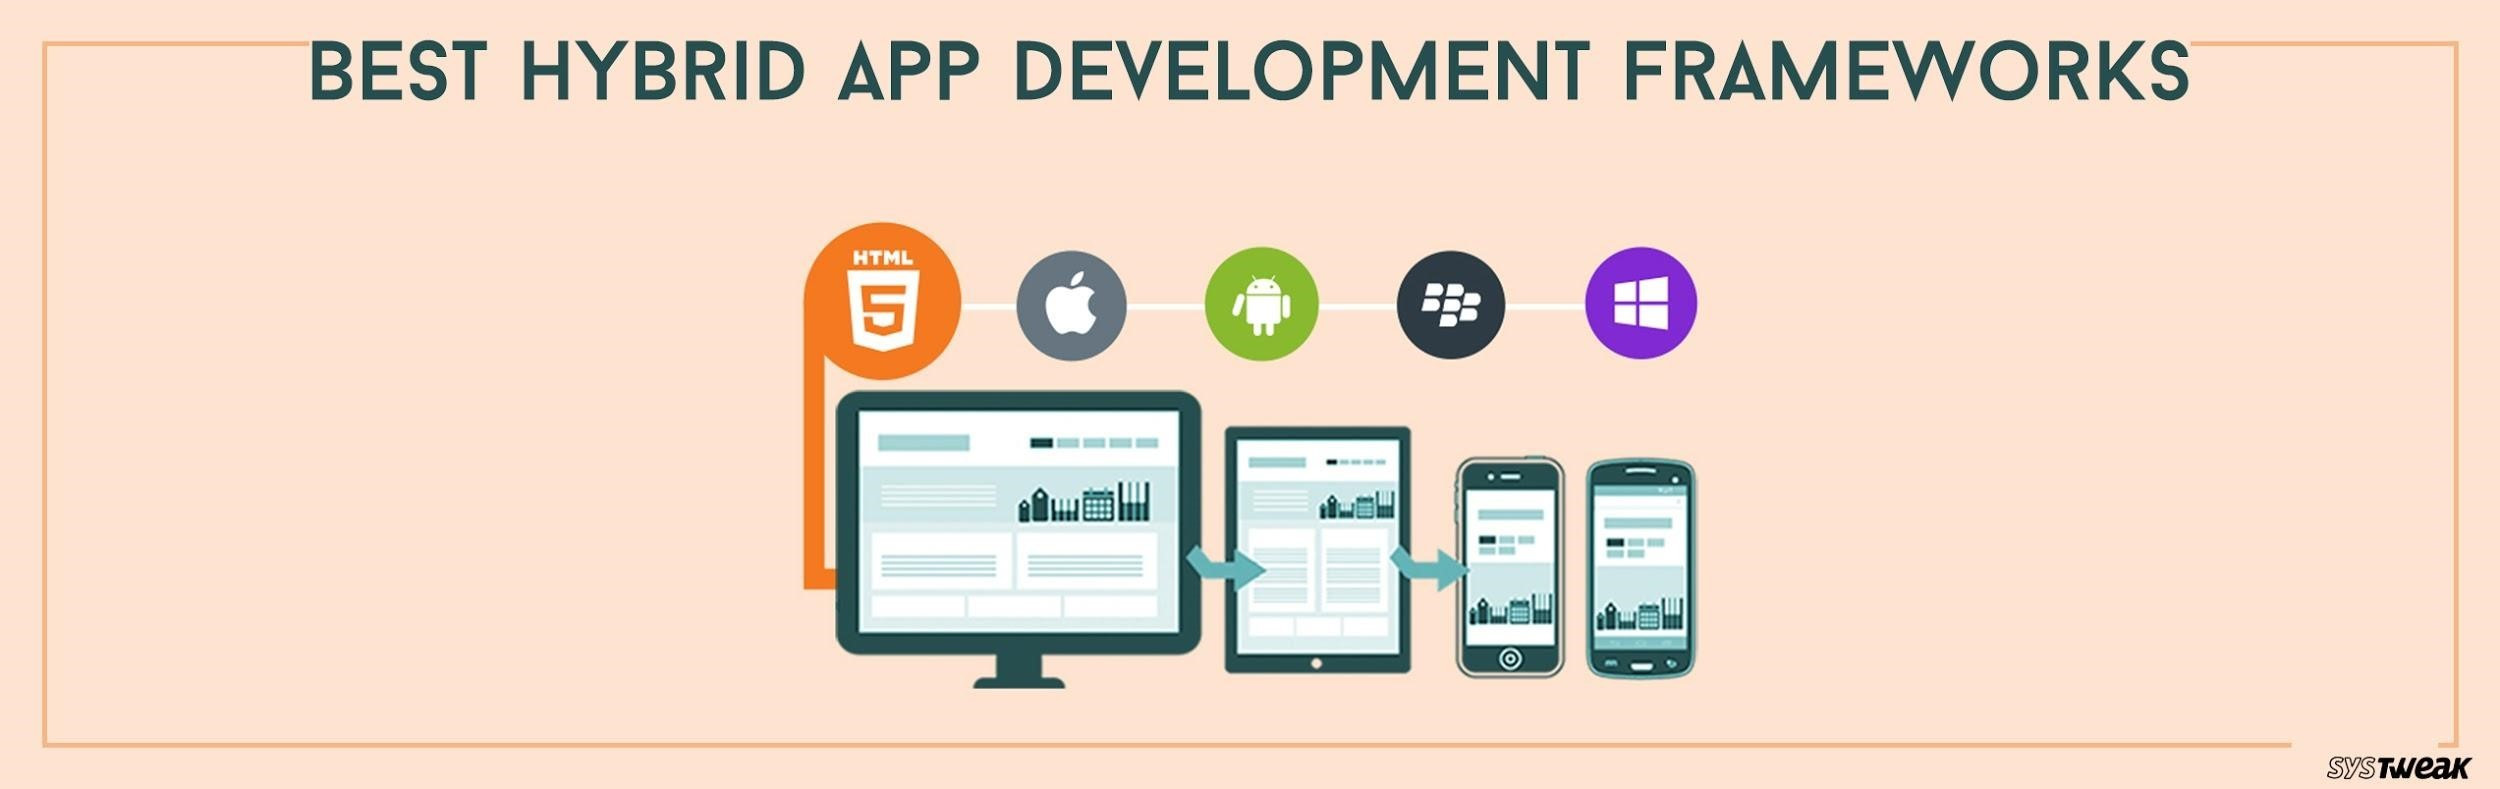 5 Best Hybrid App Development Frameworks